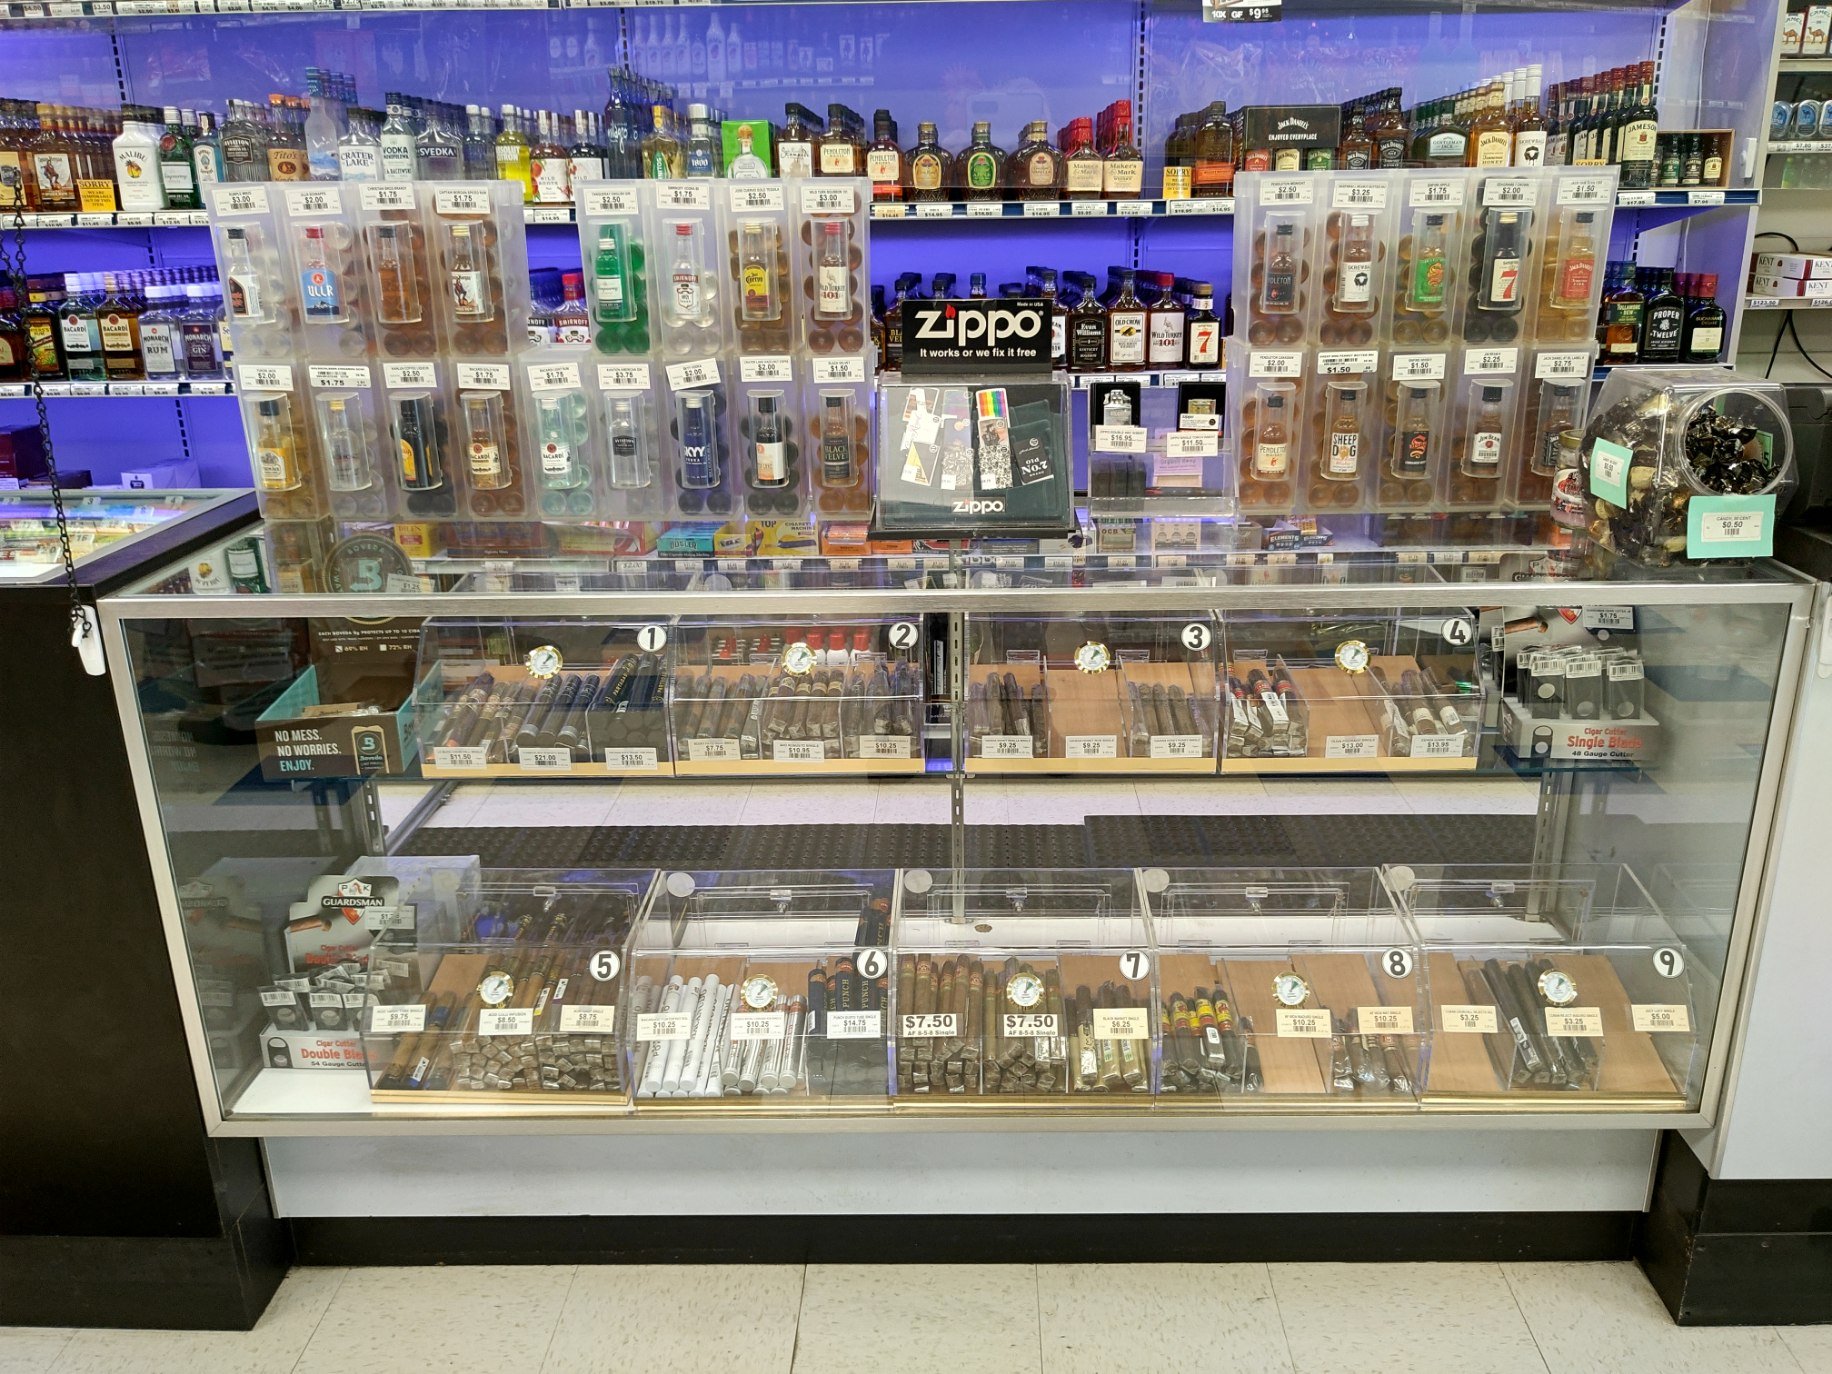  Commercial retail display for 50mL mini liquor bottle